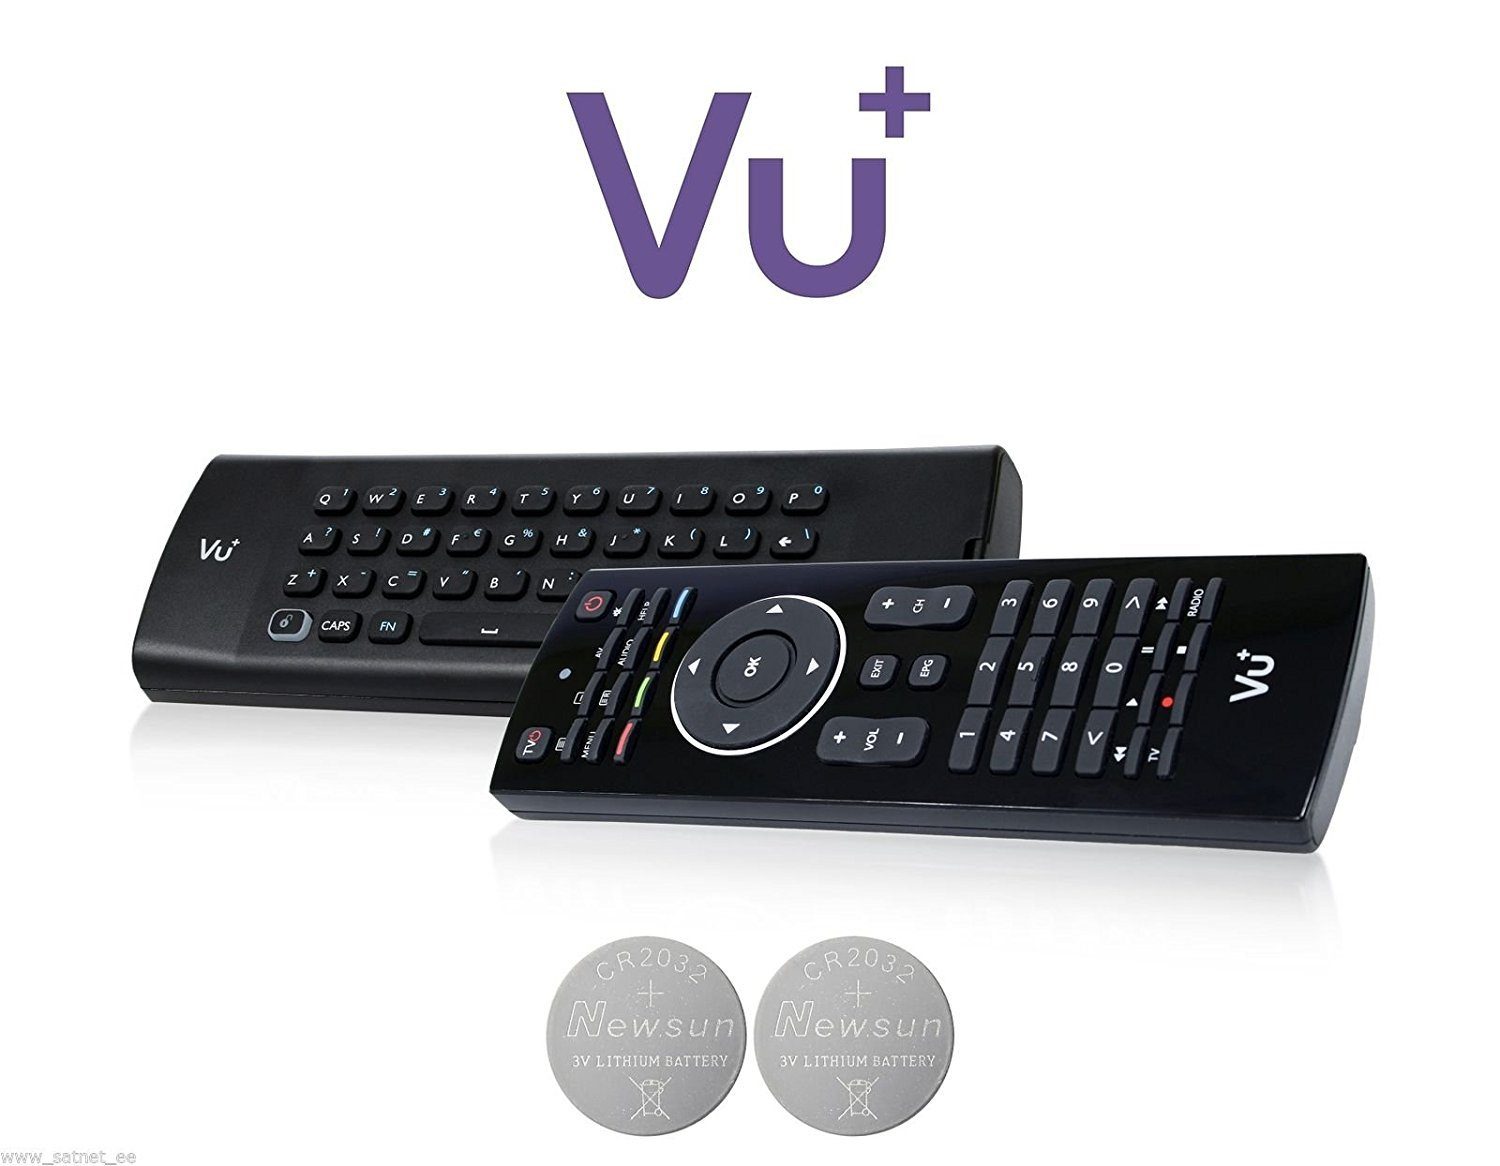 VU+ »Fernbedienung für VU+ Ultimo / Solo2 / Duo2 QWERTZ« Fernbedienung  online kaufen | OTTO